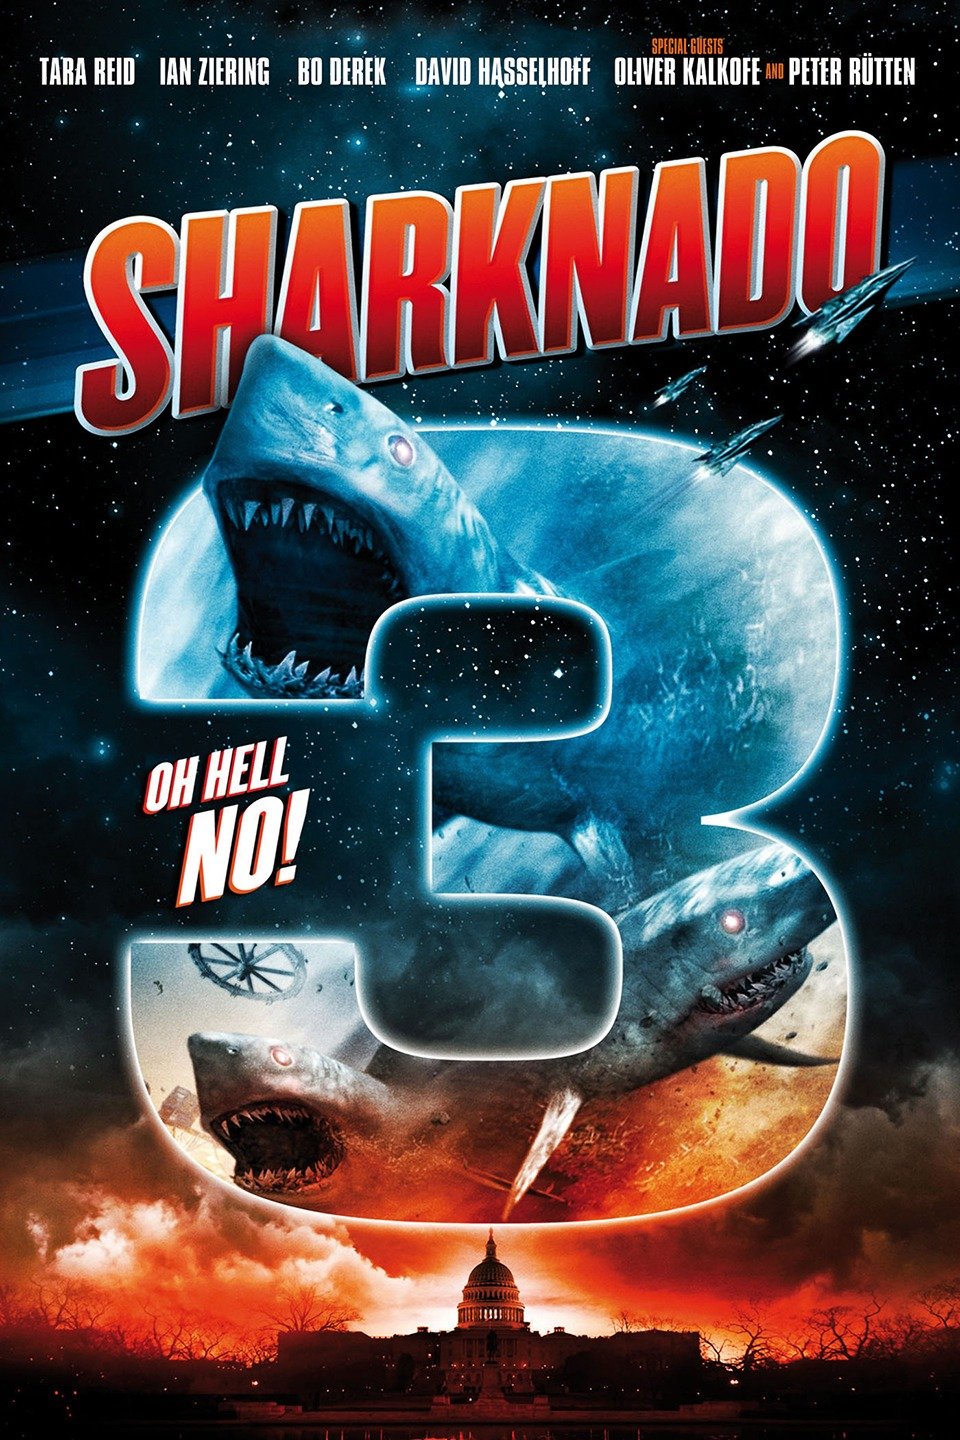 "Sharknado 3: Oh Hell No! photo 9"